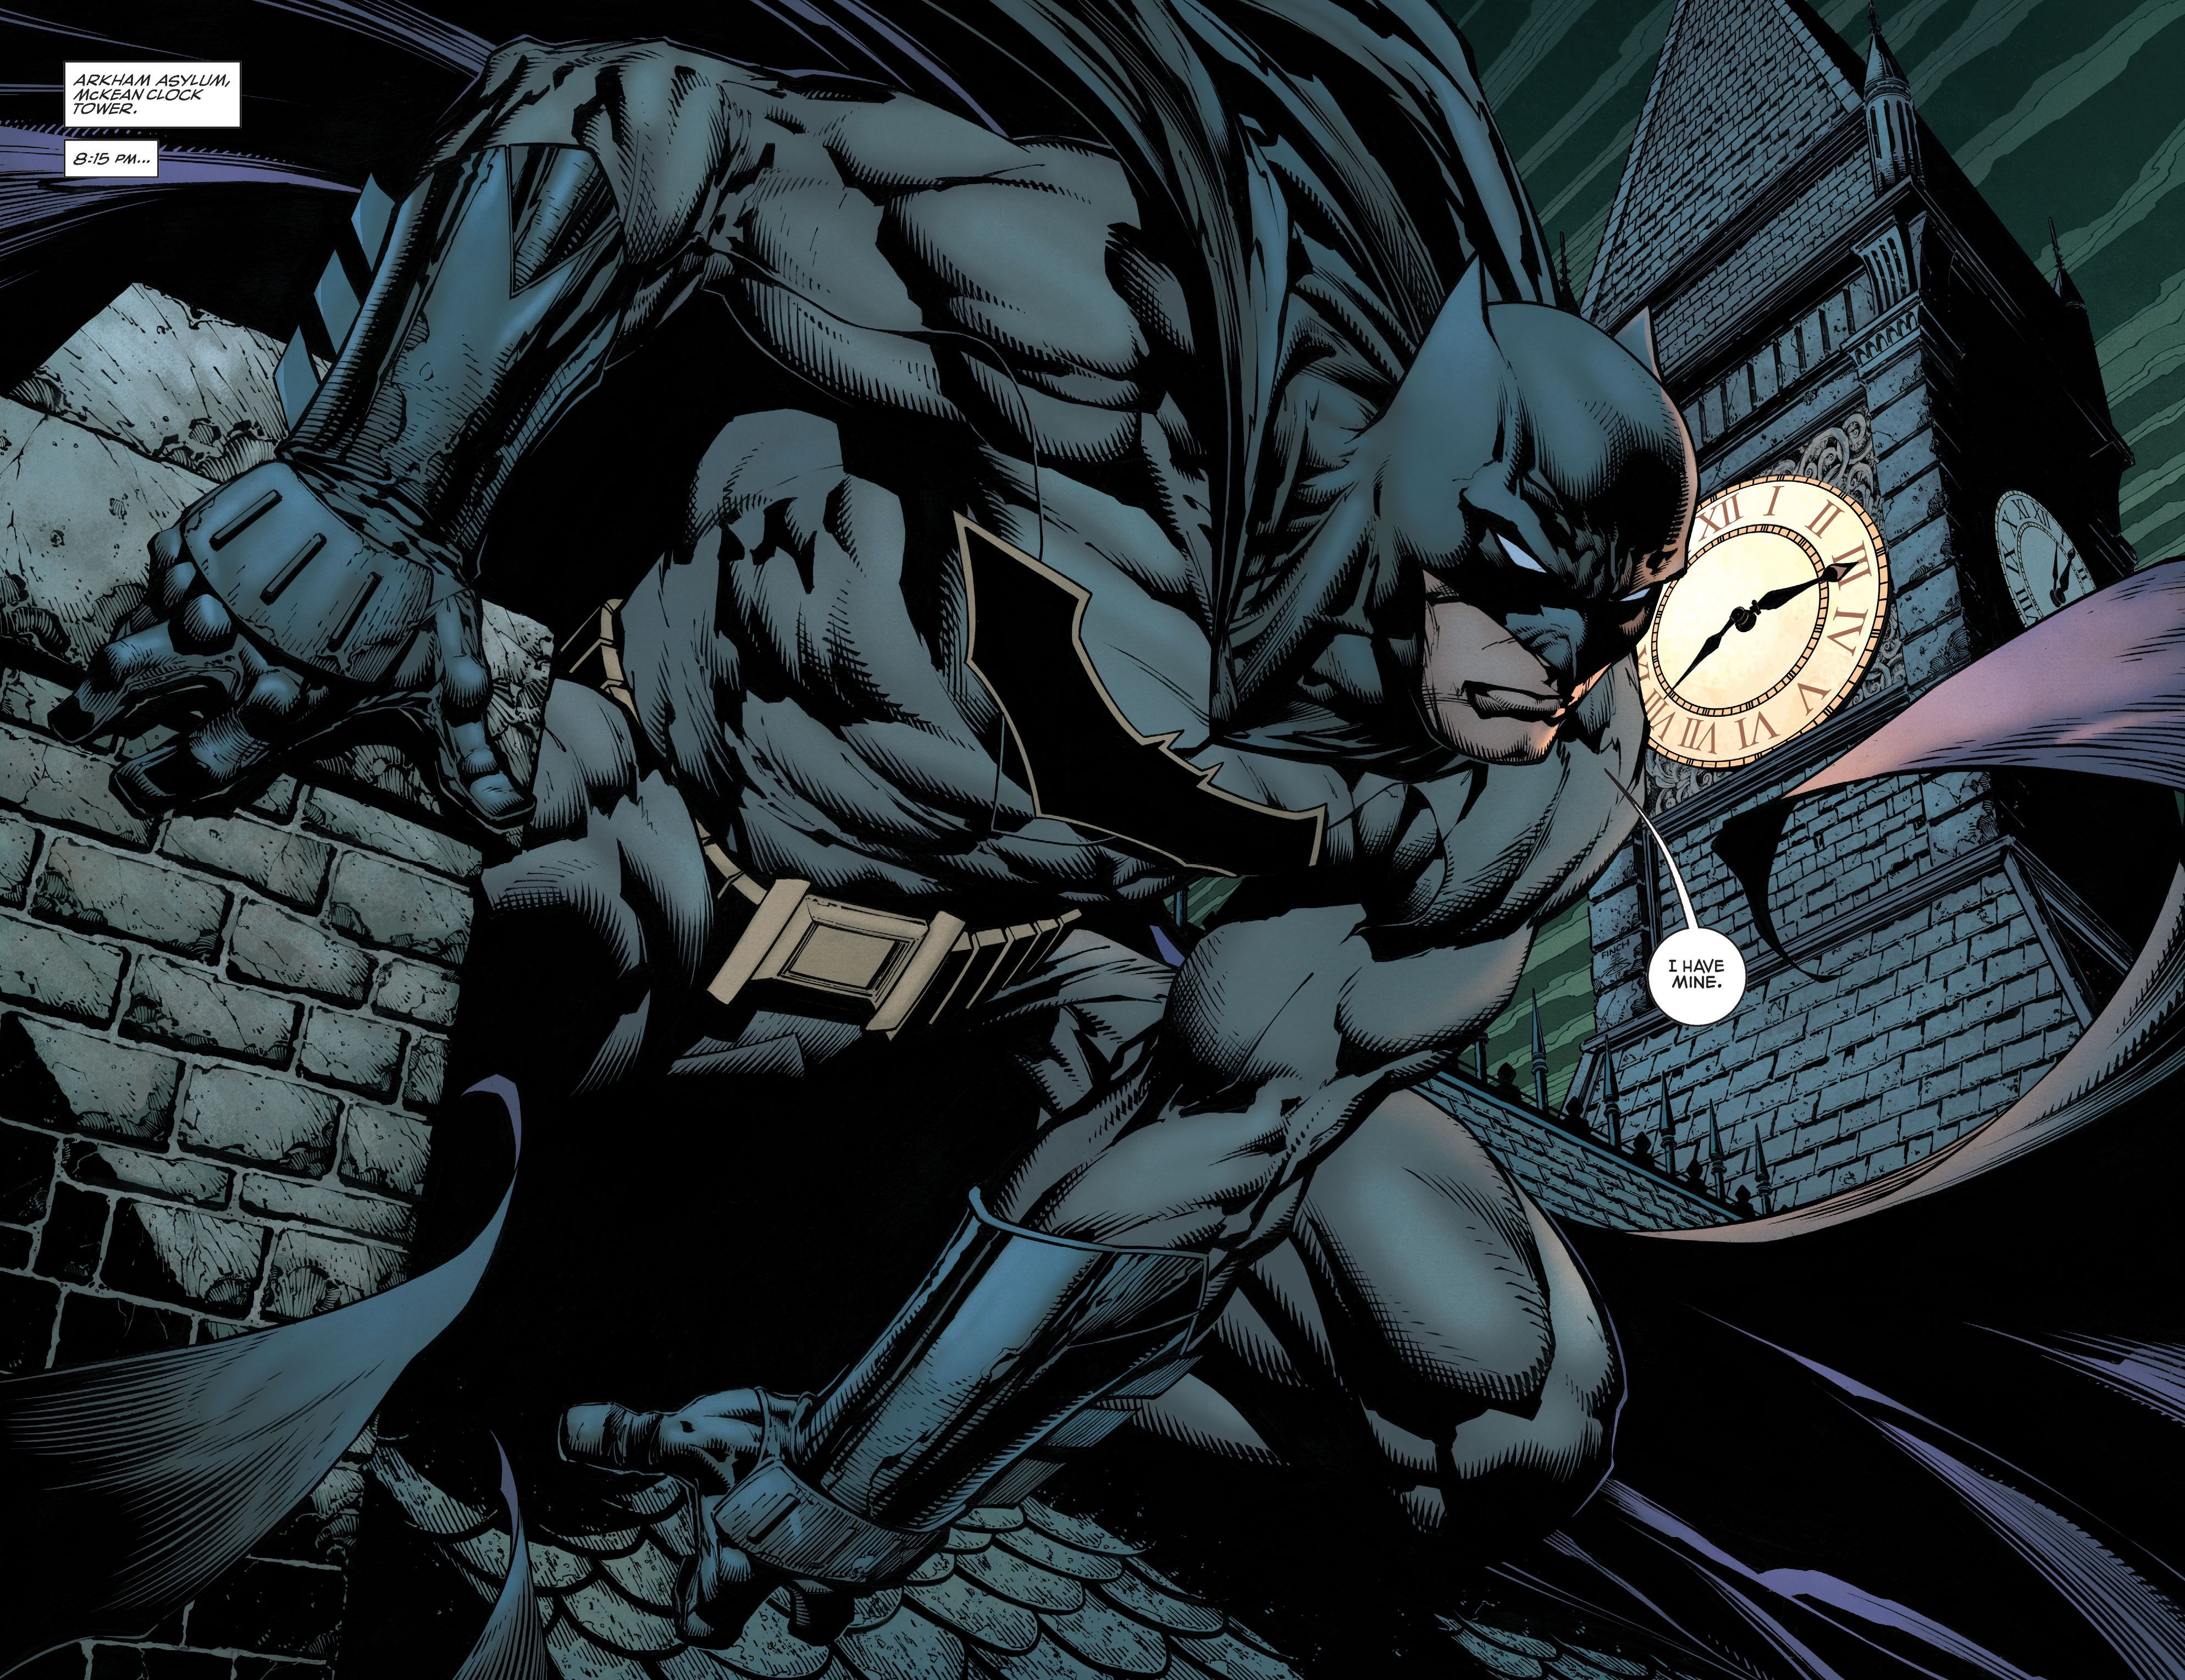 Batman (2016) Issue Batman (2016) Issue comic